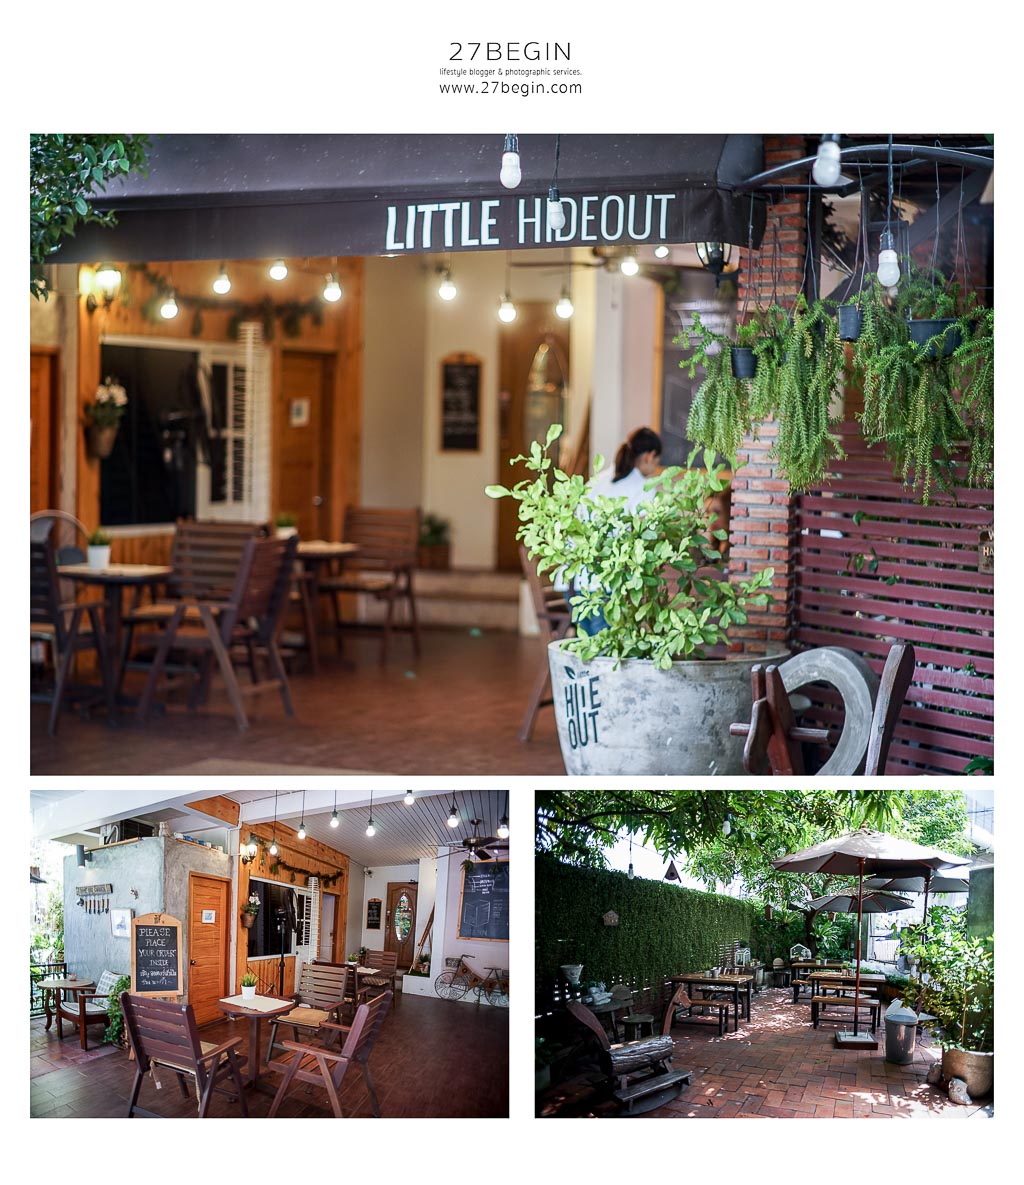 27begin_Little-Hideout-Cafe_3